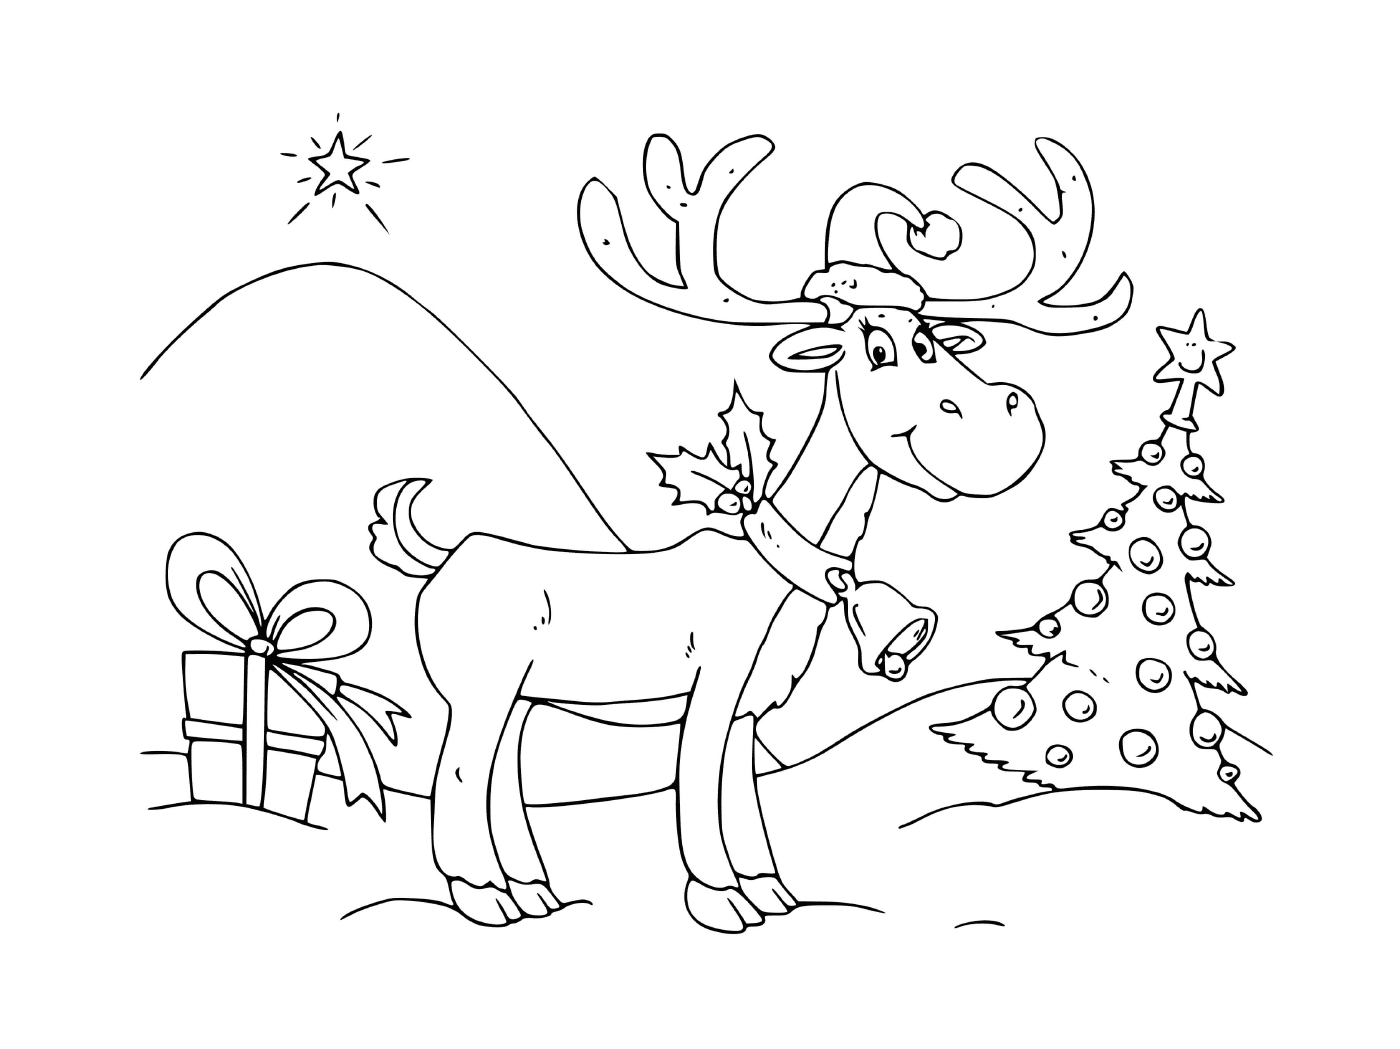  عيد الميلاد مع جرس و شجرة 